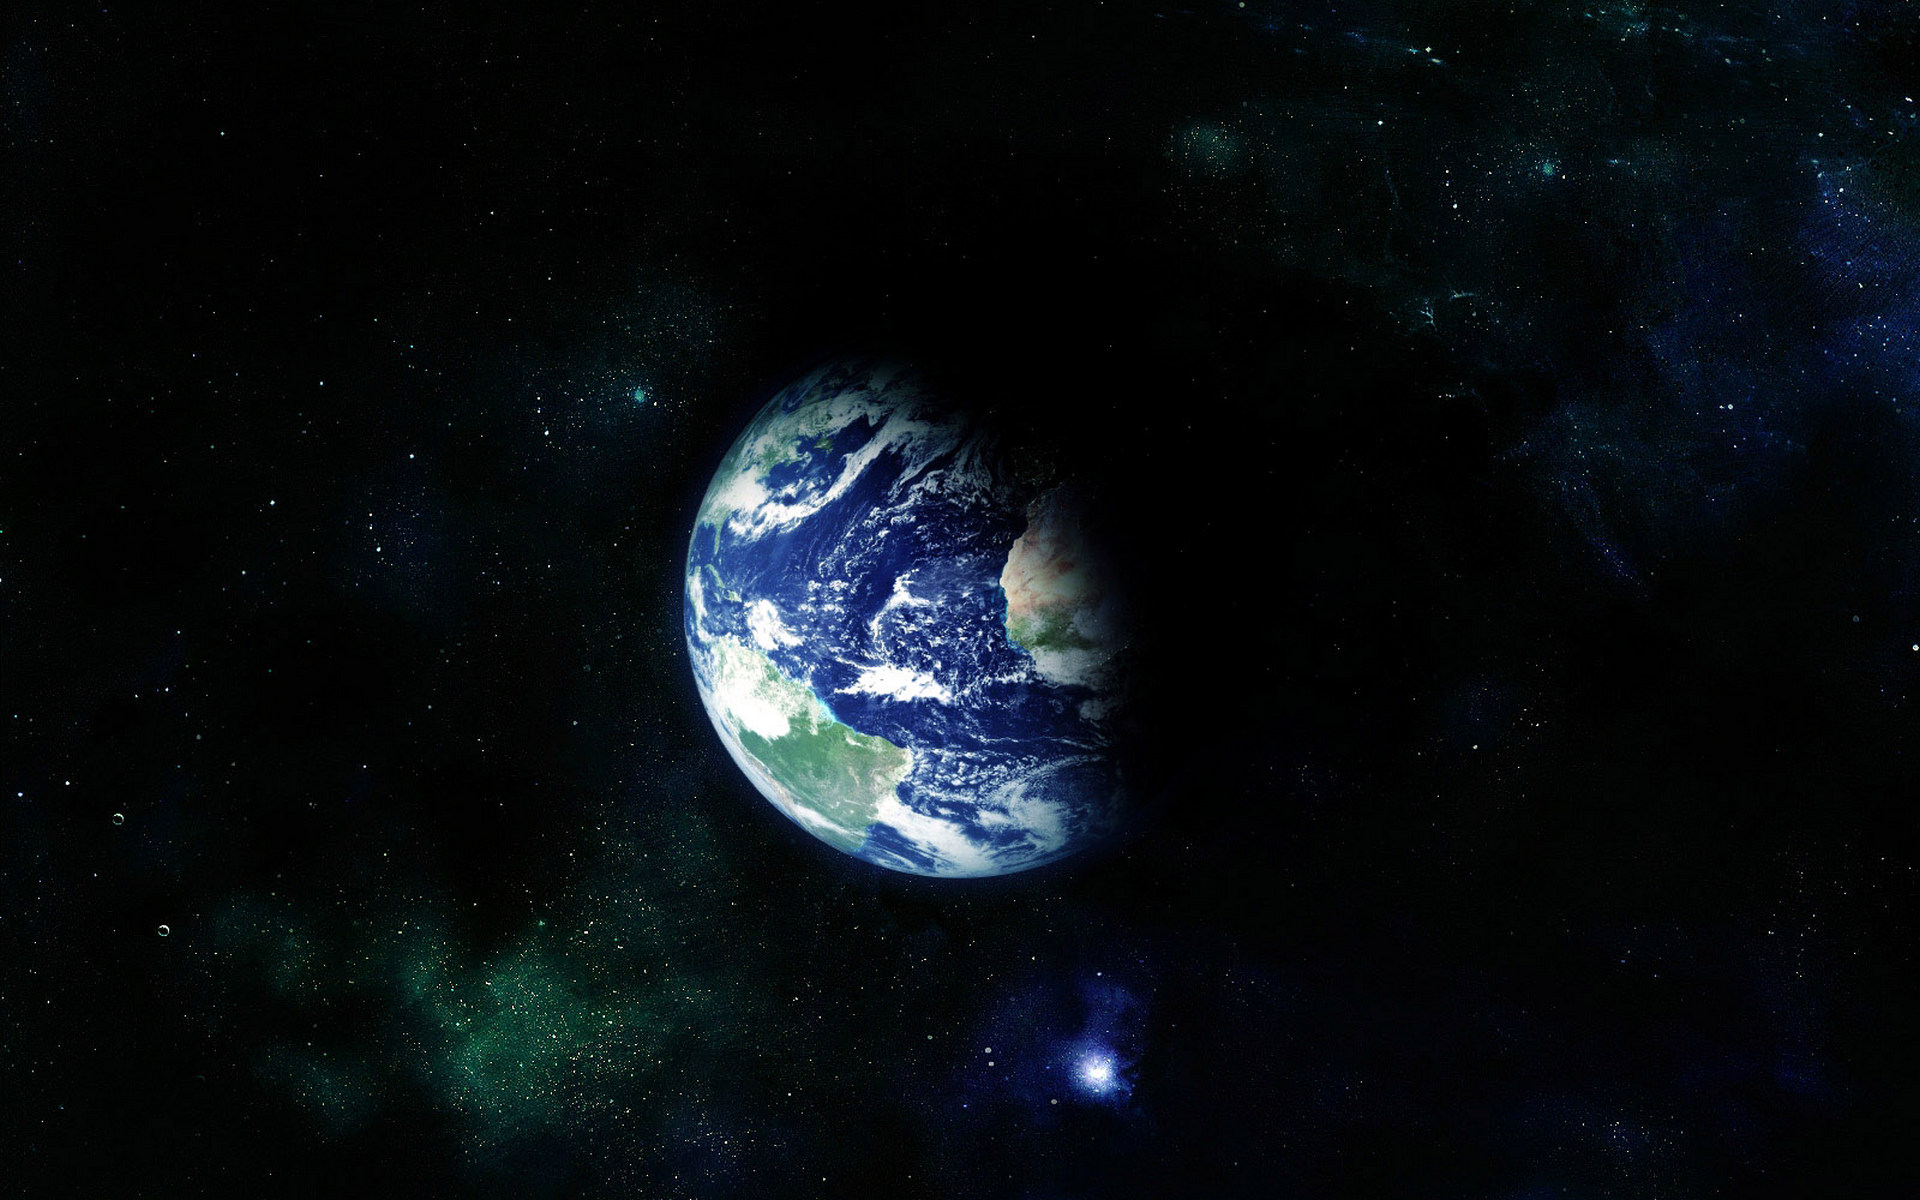 Обои Земной шар картинки на рабочий стол на тему Космос - скачать без смс